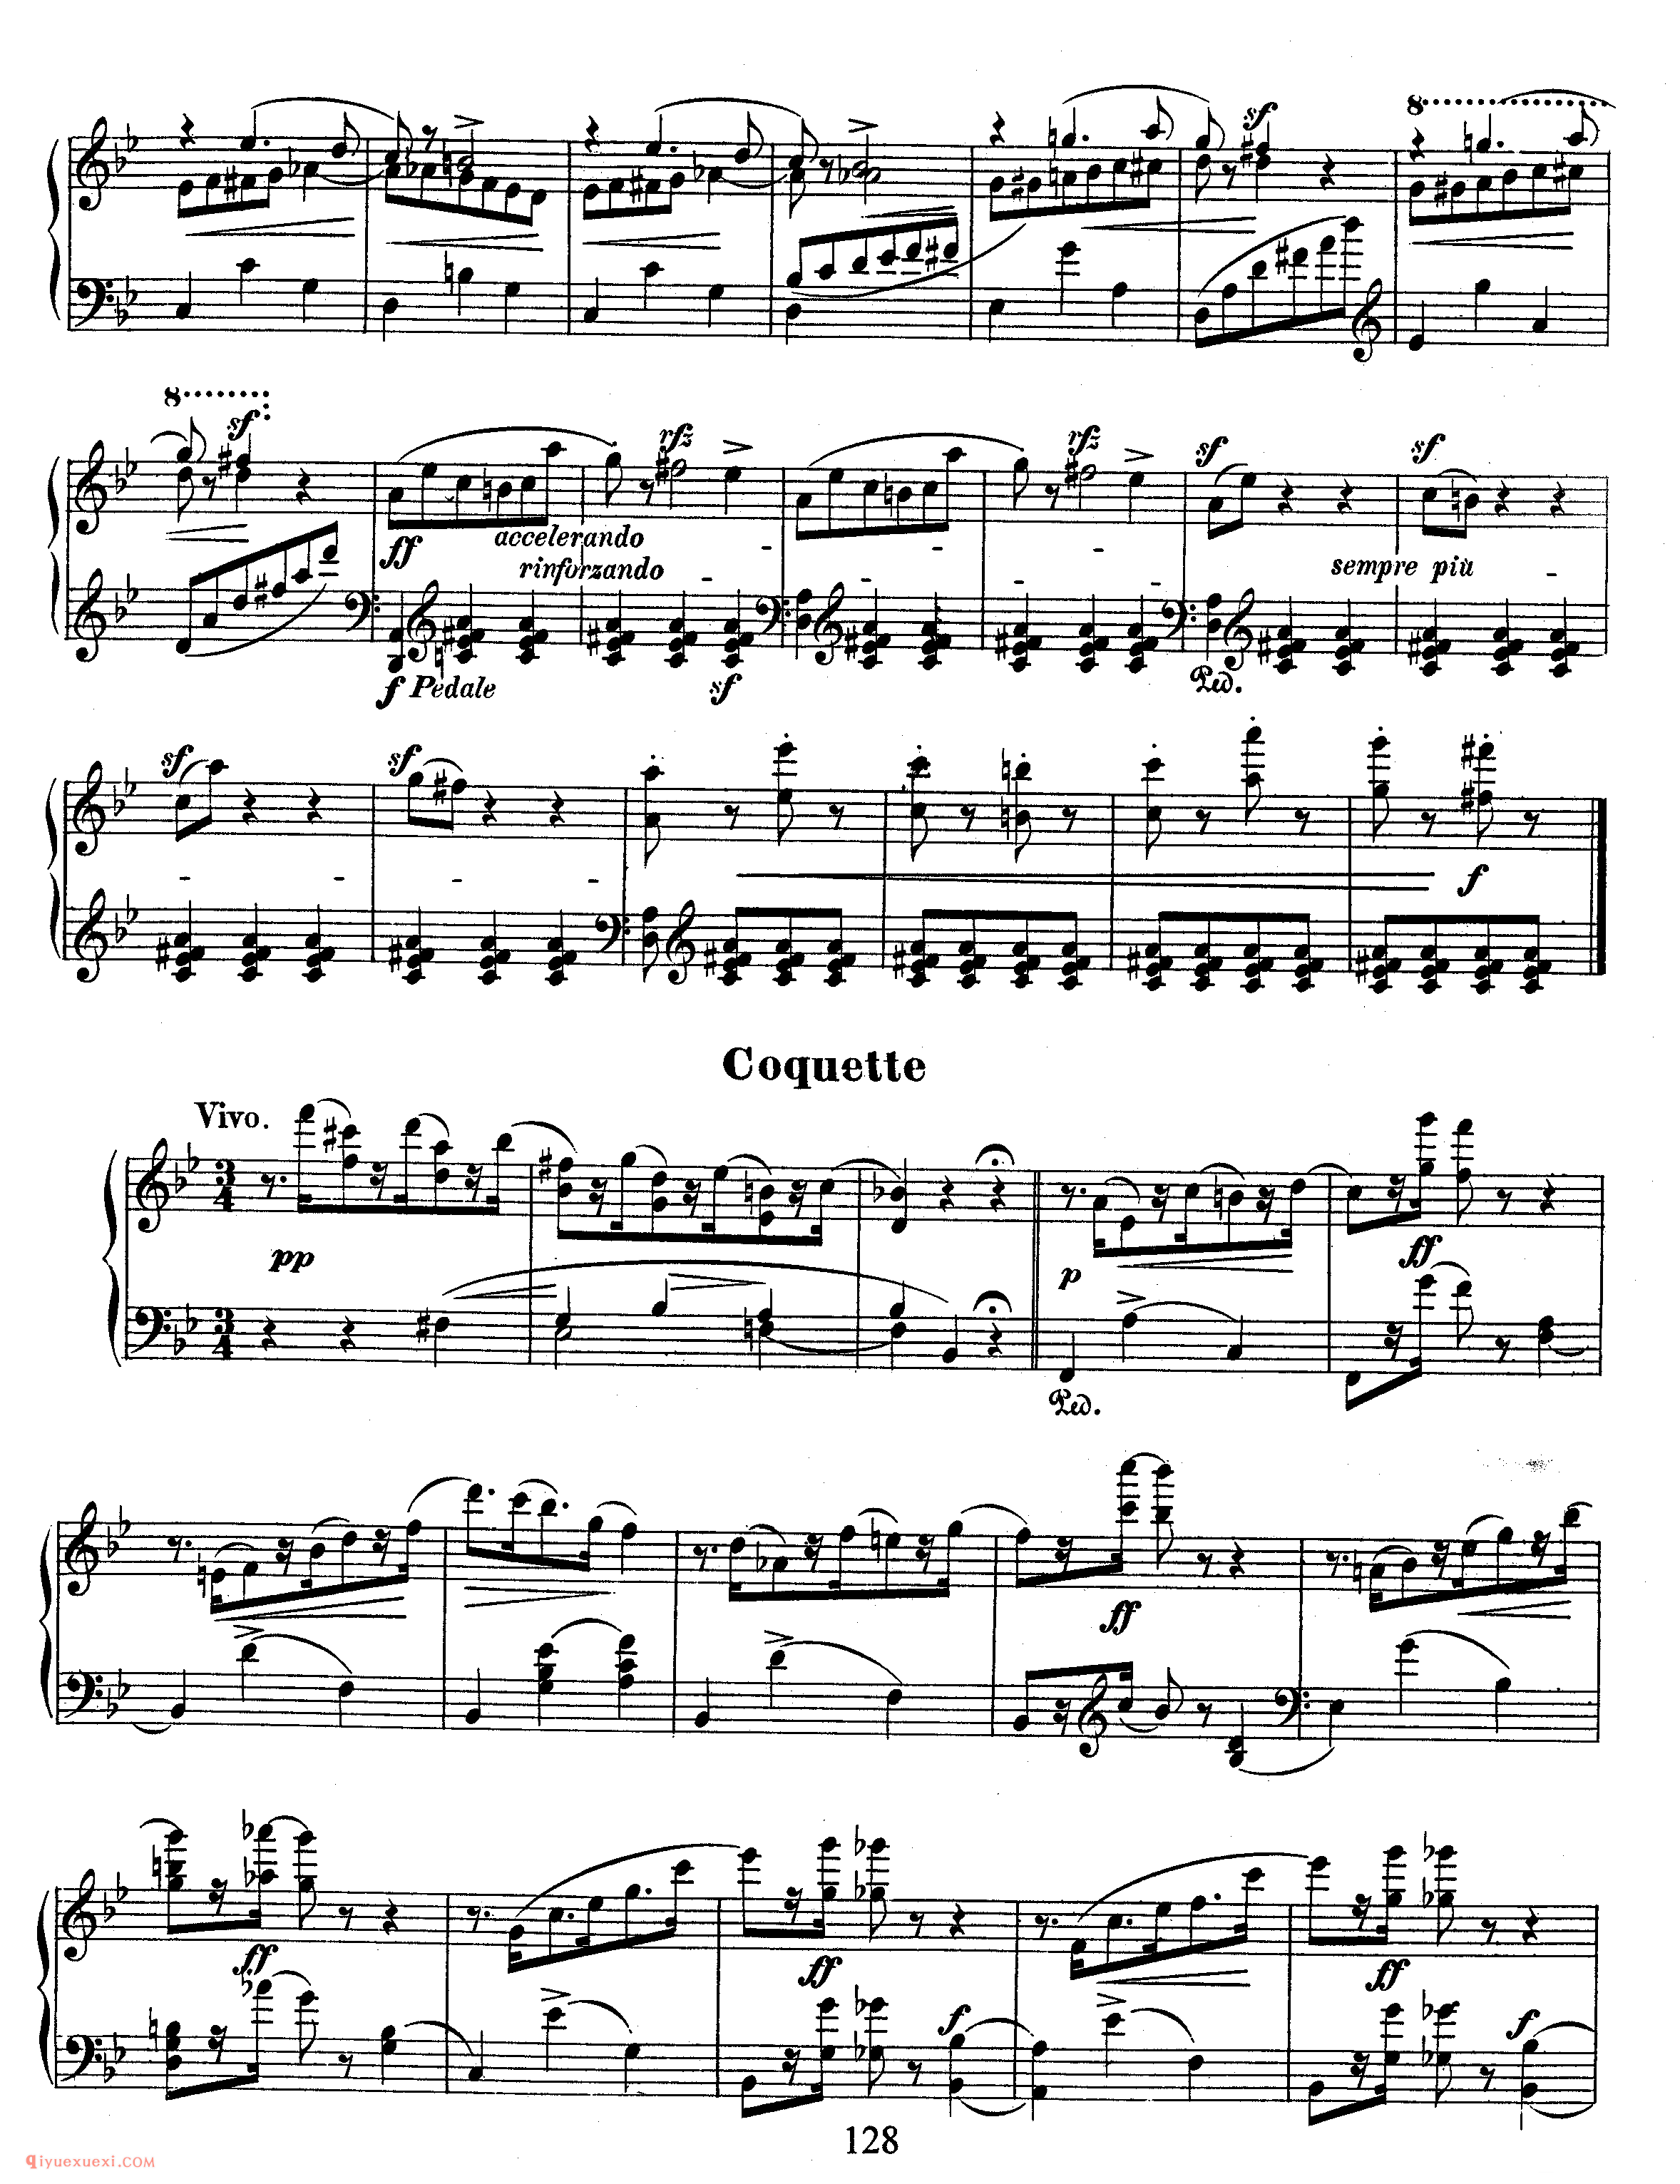 舒曼《狂欢节》作品9_Schumann Carnaval Op.9_舒曼钢琴谱